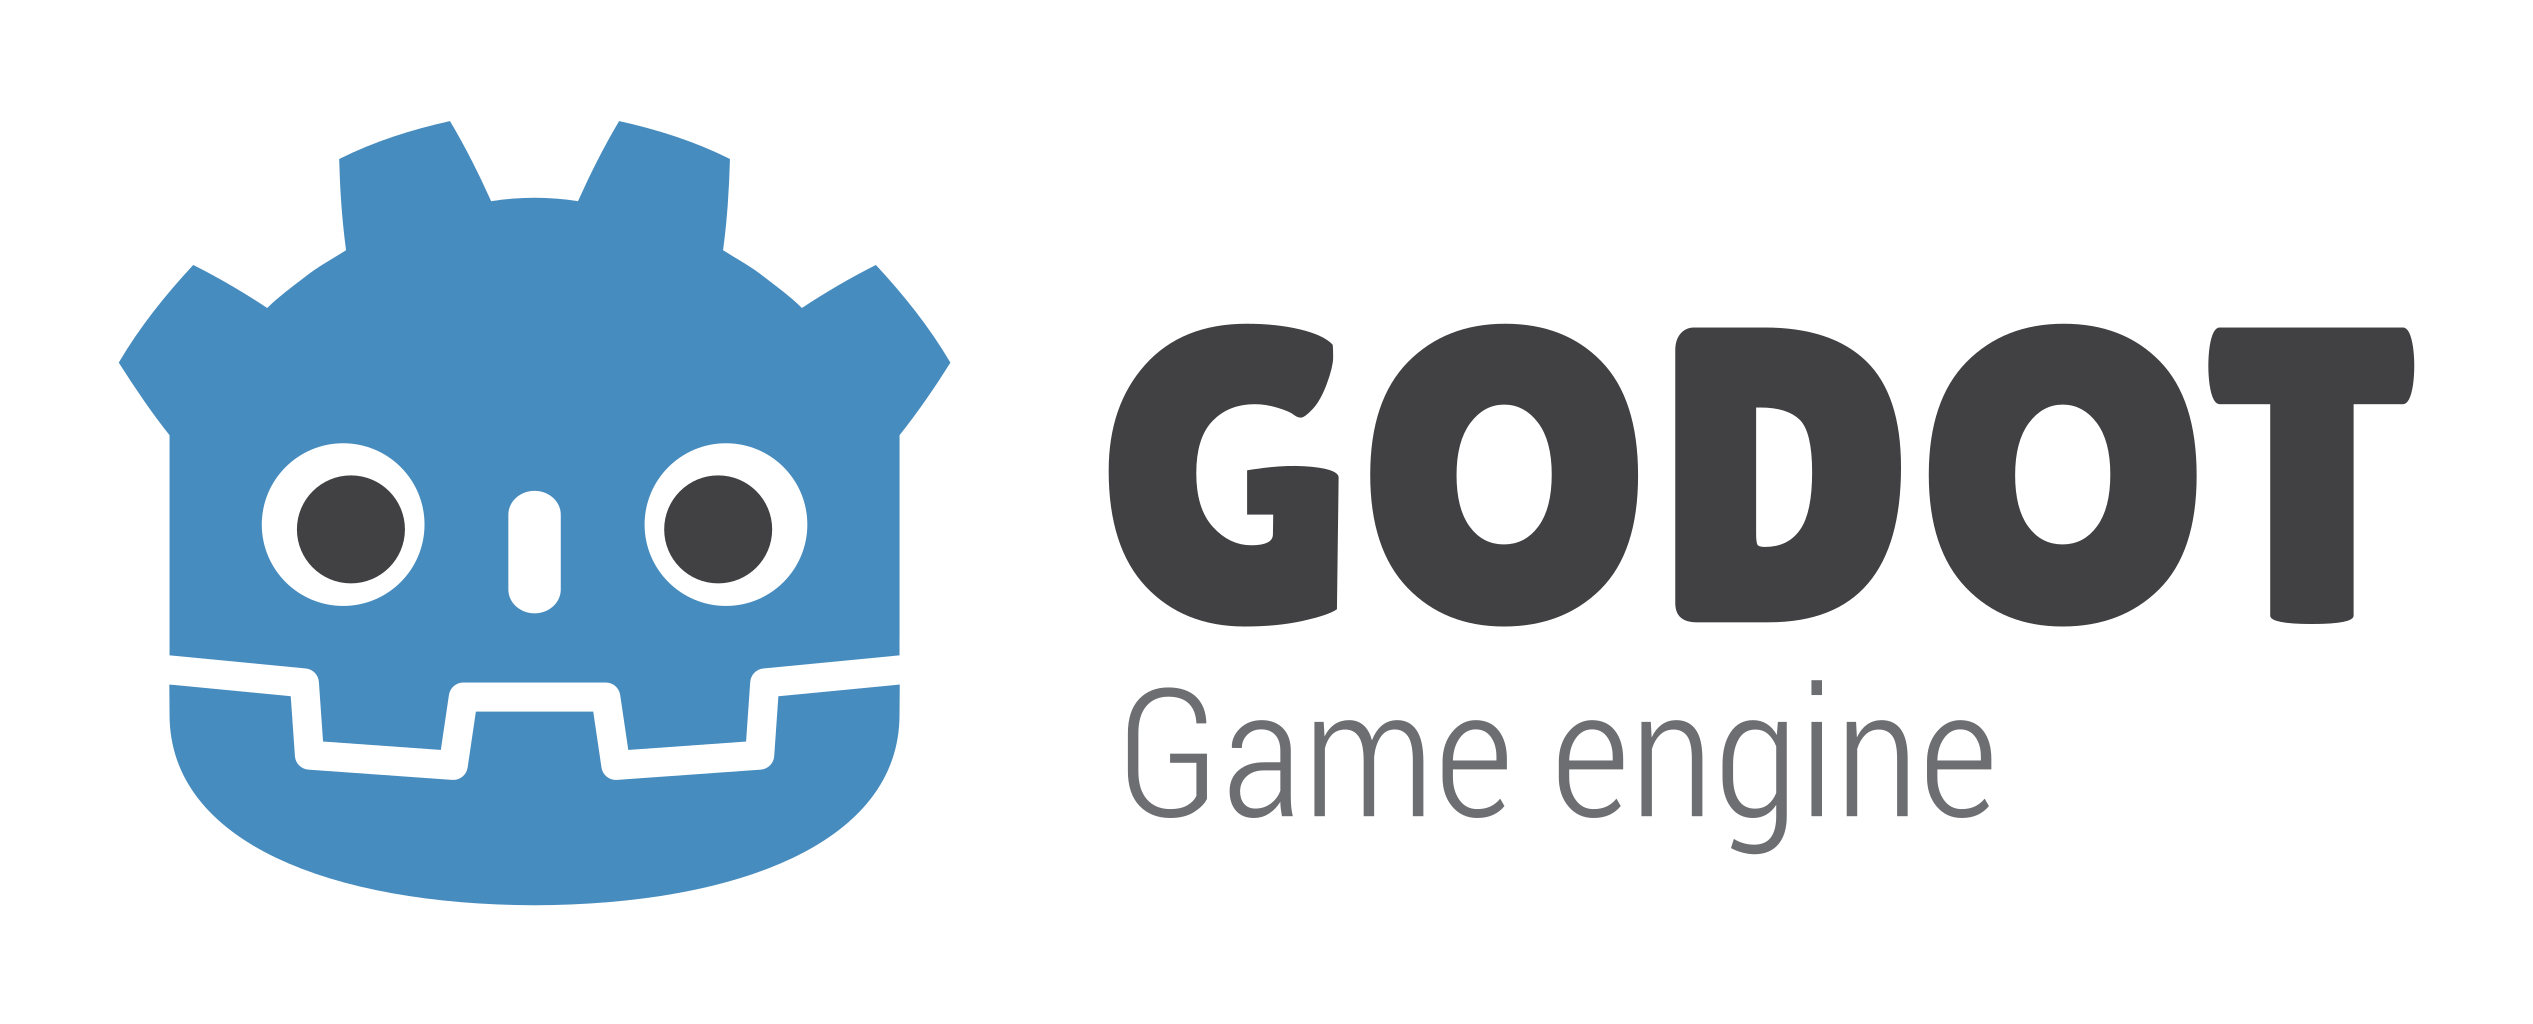 _images/godot_logo.png